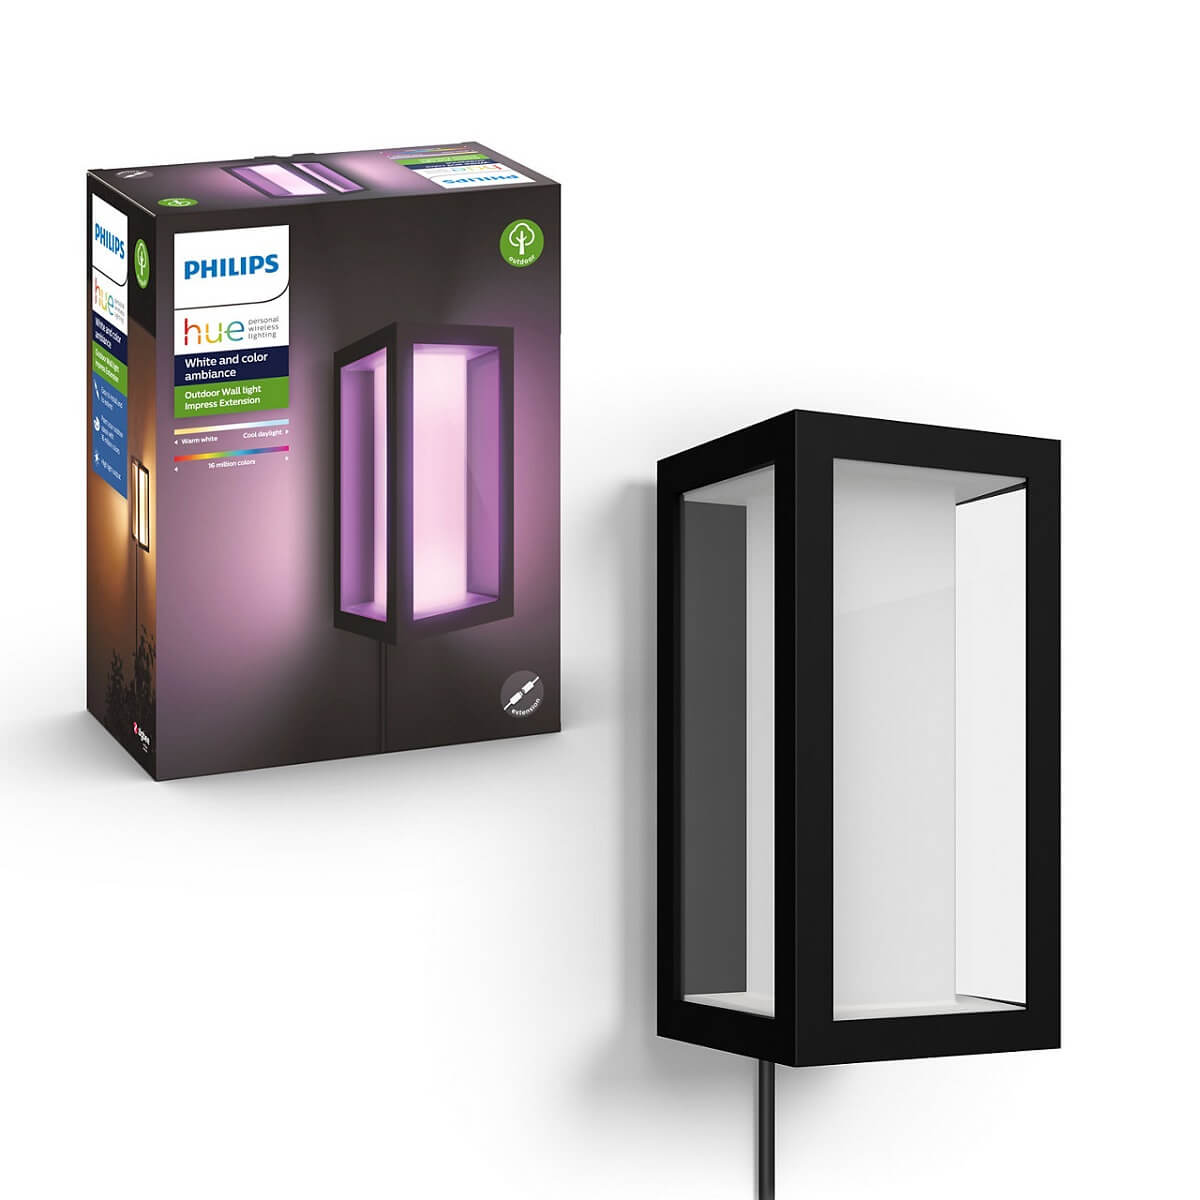 Philips Hue Outdoor your-smarthome Aussenbereich Onlineshop HIER Leuchte | | Dein Home Smart 